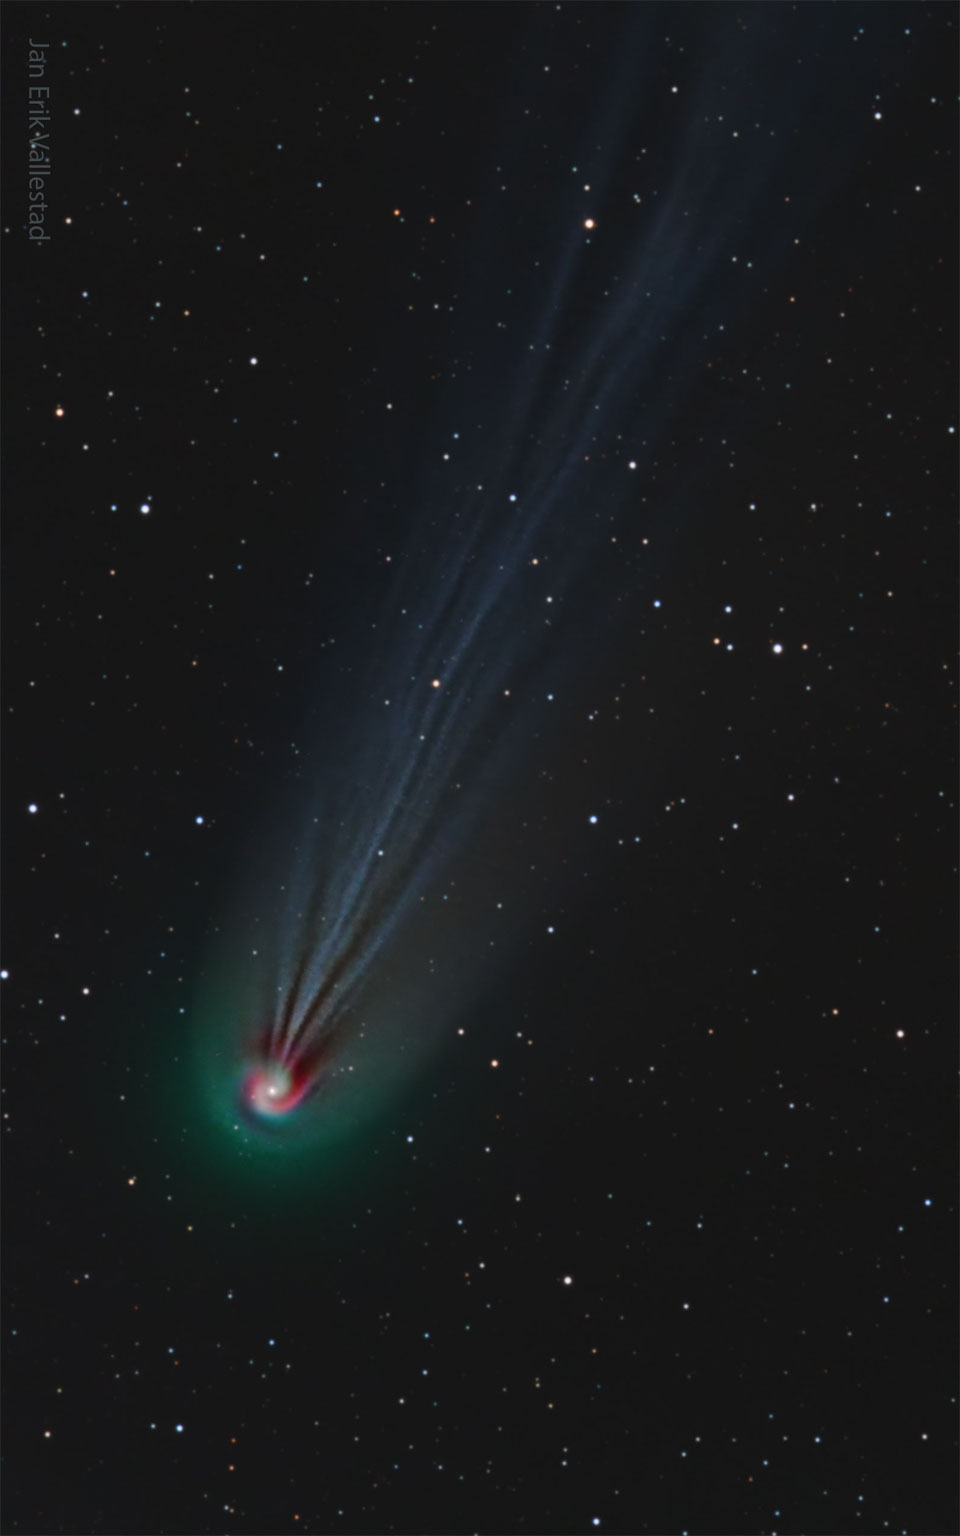 照片中的彗星有一条非常长的波浪形离子尾。彗星的前部——彗发——看起来是一个螺旋。彗发呈绿色，尾部呈淡蓝色，部分漩涡呈红色。有关更多详细信息，请参阅说明。